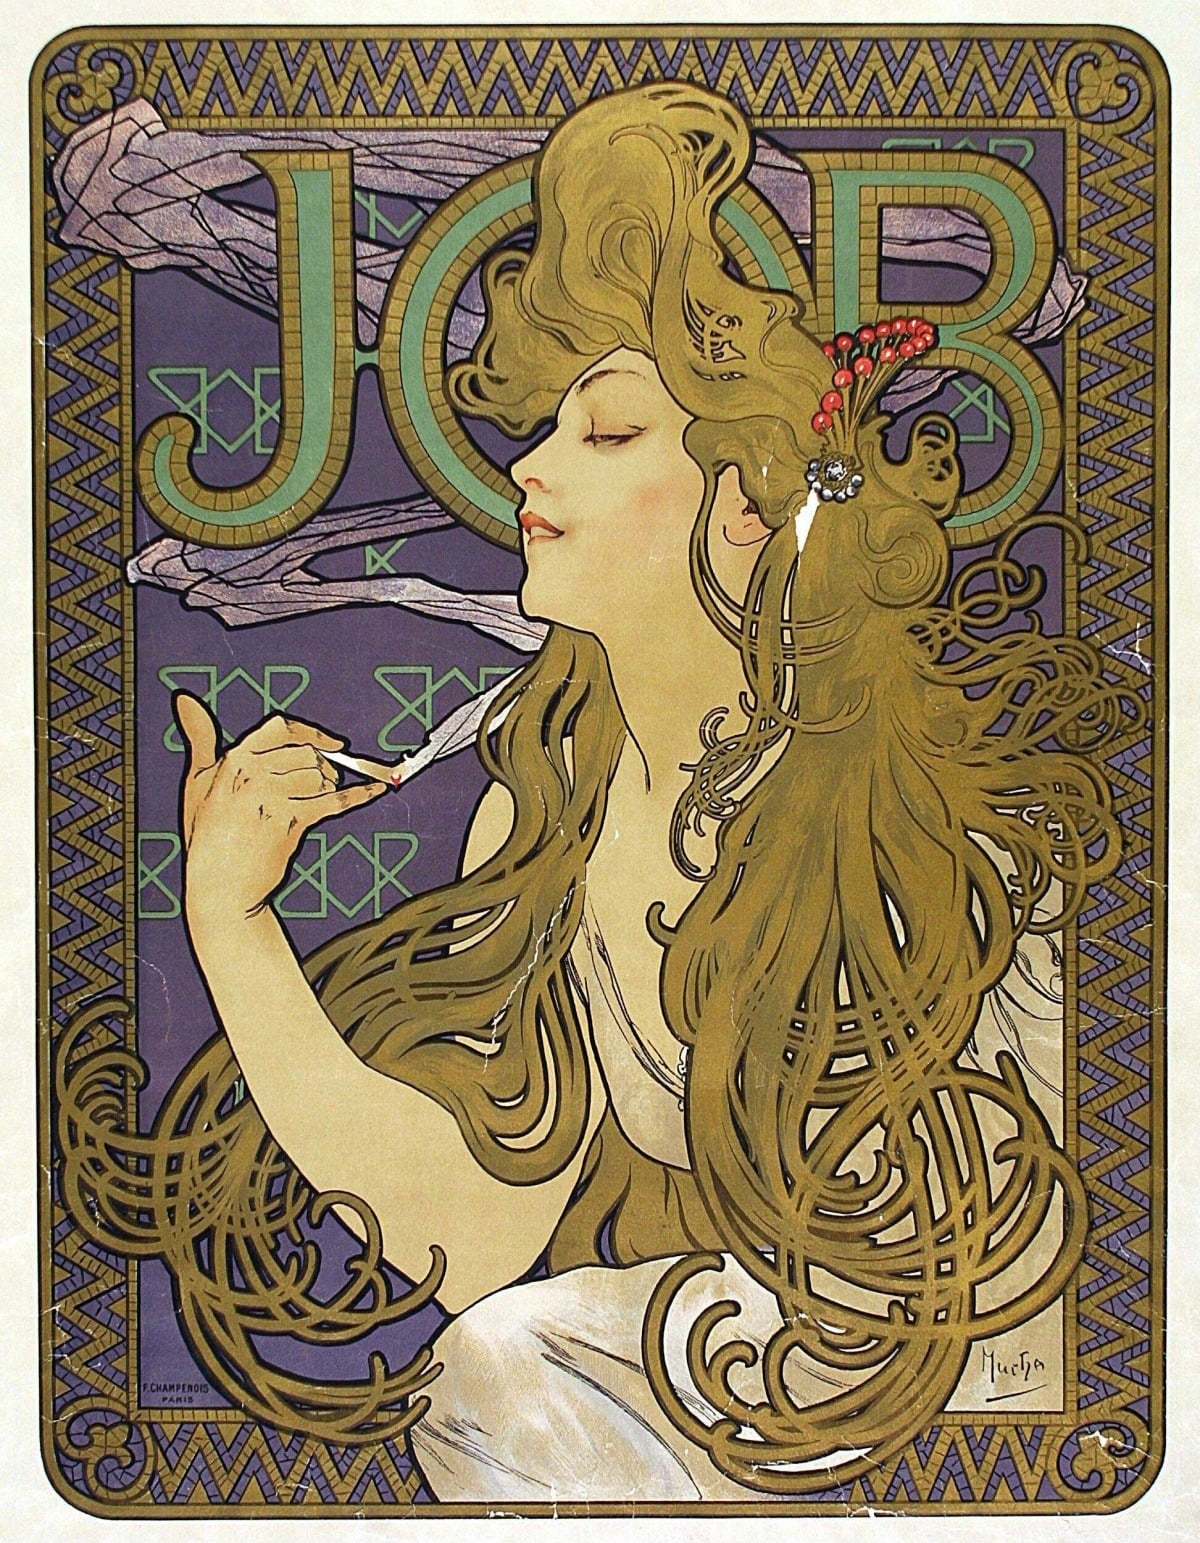 <그림 4- 알폰스 무하, JOB 담배 종이 광고 포스터, 1898, © 빅토리아 앤 앨버트 박물관, 런던 > 